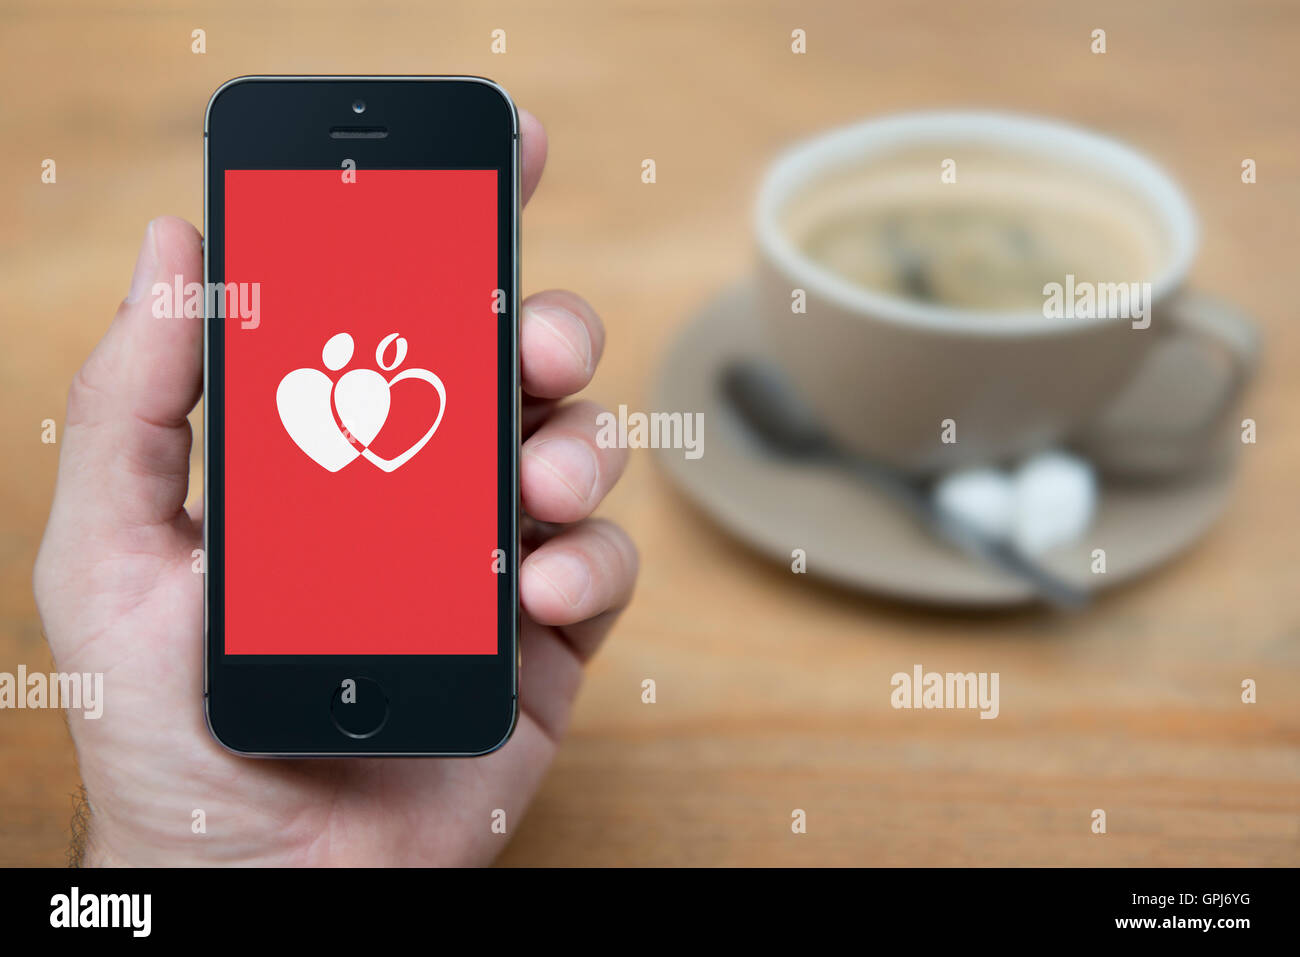 Un uomo guarda al suo iPhone che visualizza il dare la donazione di sangue logo, mentre sat con una tazza di caffè (solo uso editoriale). Foto Stock